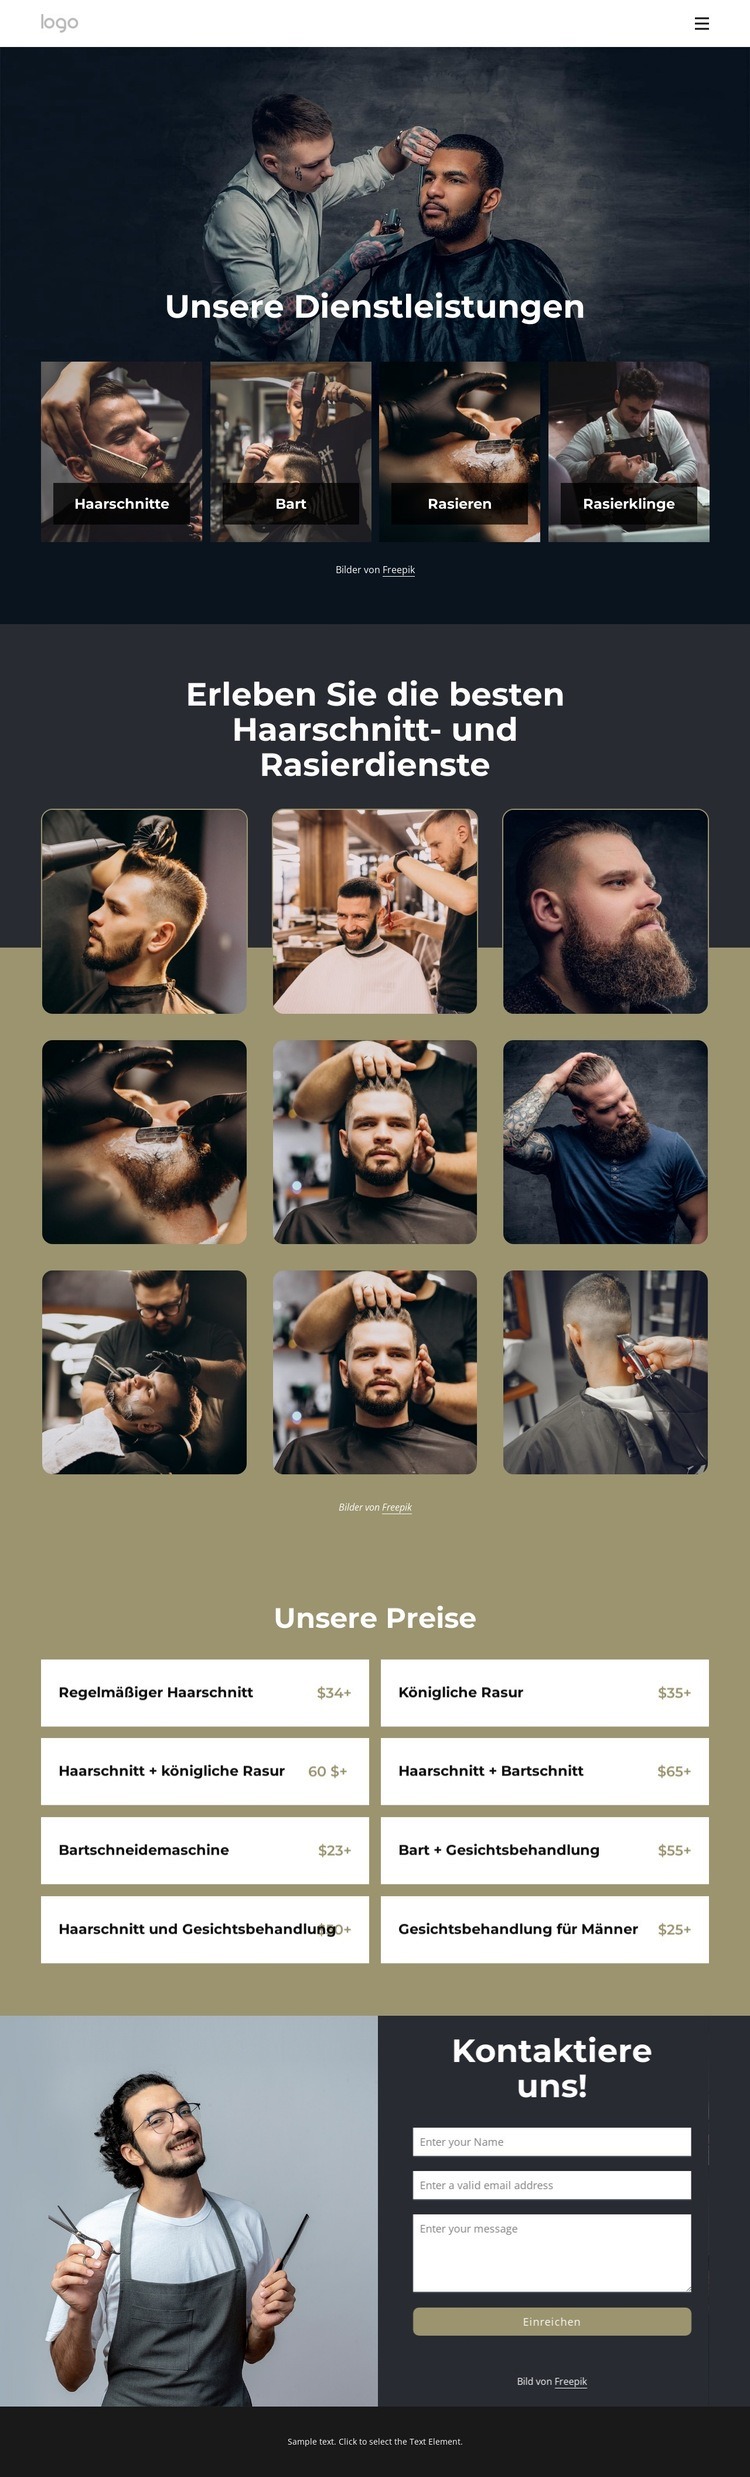 Beste Haarschnitt- und Rasurdienste Website design